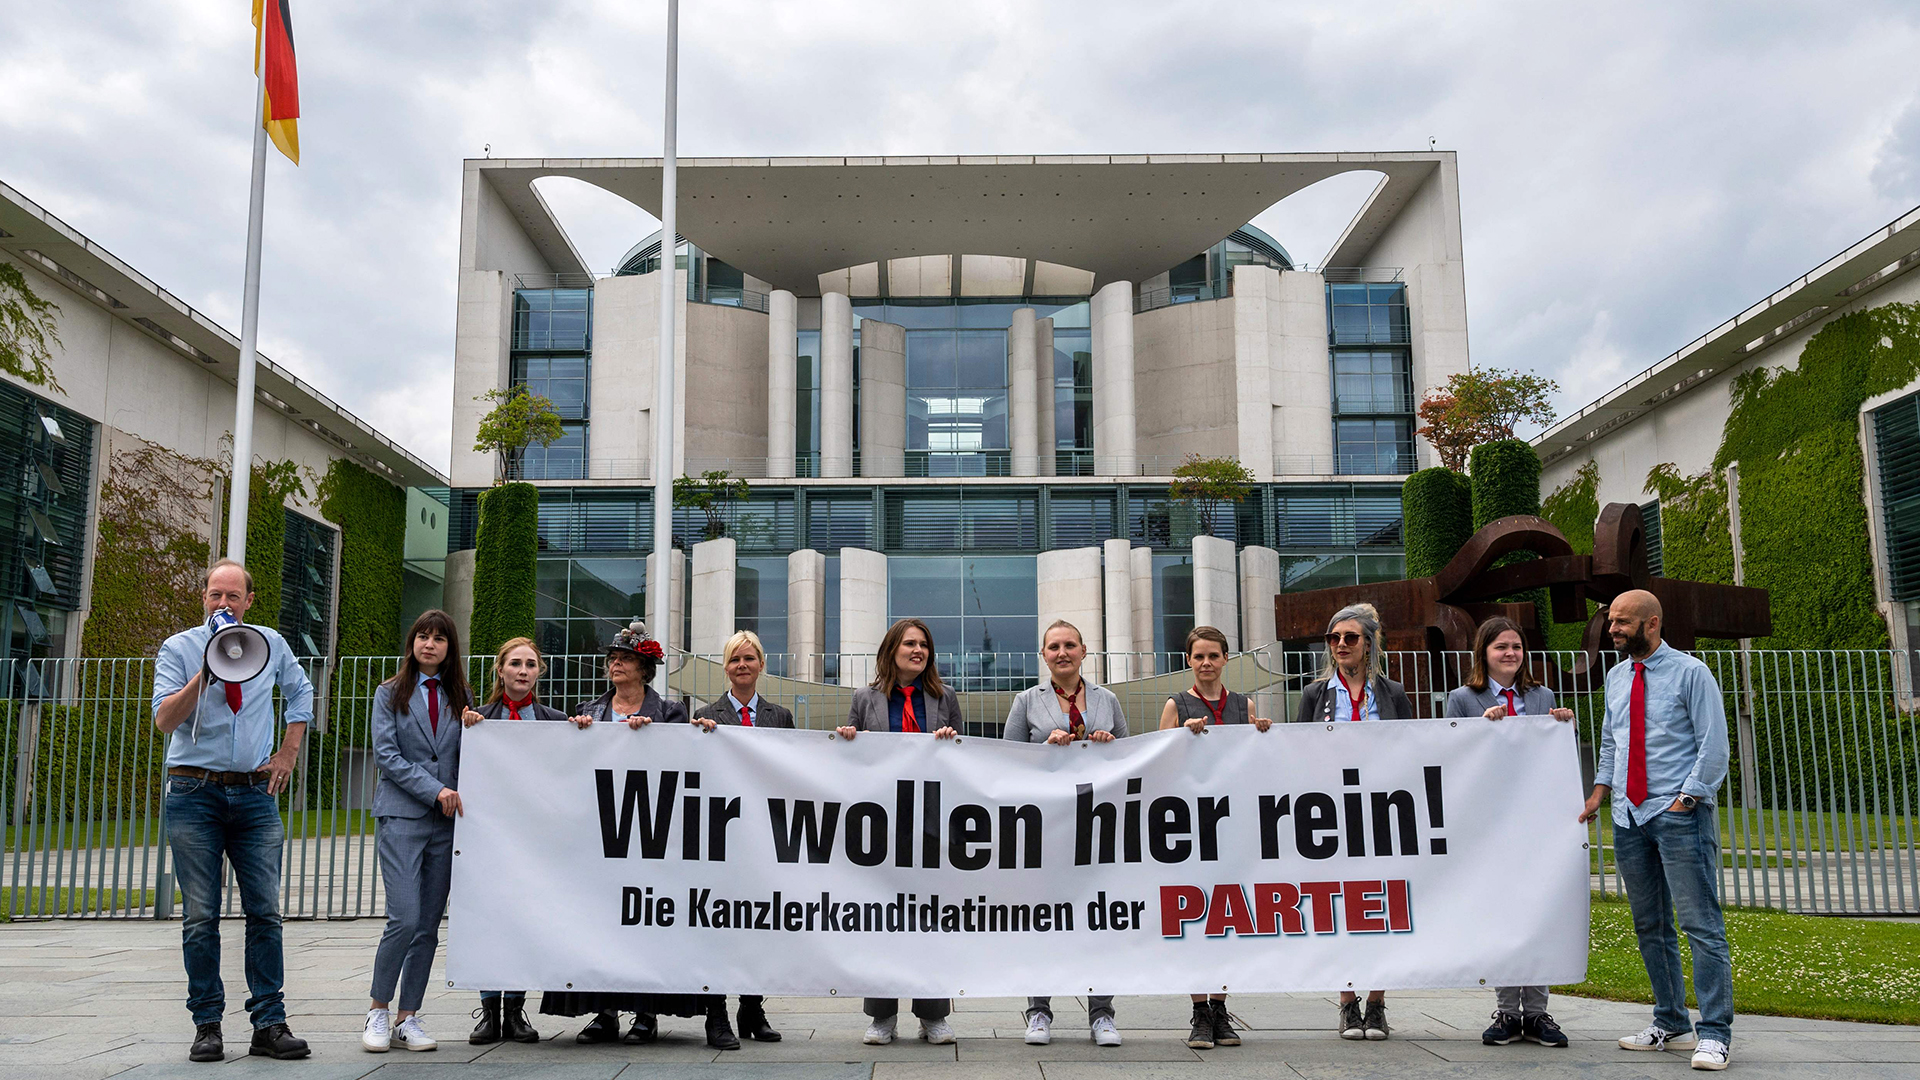 Mitglieder der "Partei" stehen mit einem Transparent mit der Aufschrift "Wir wollen hier rein!" vor dem Bundeskanzleramt.